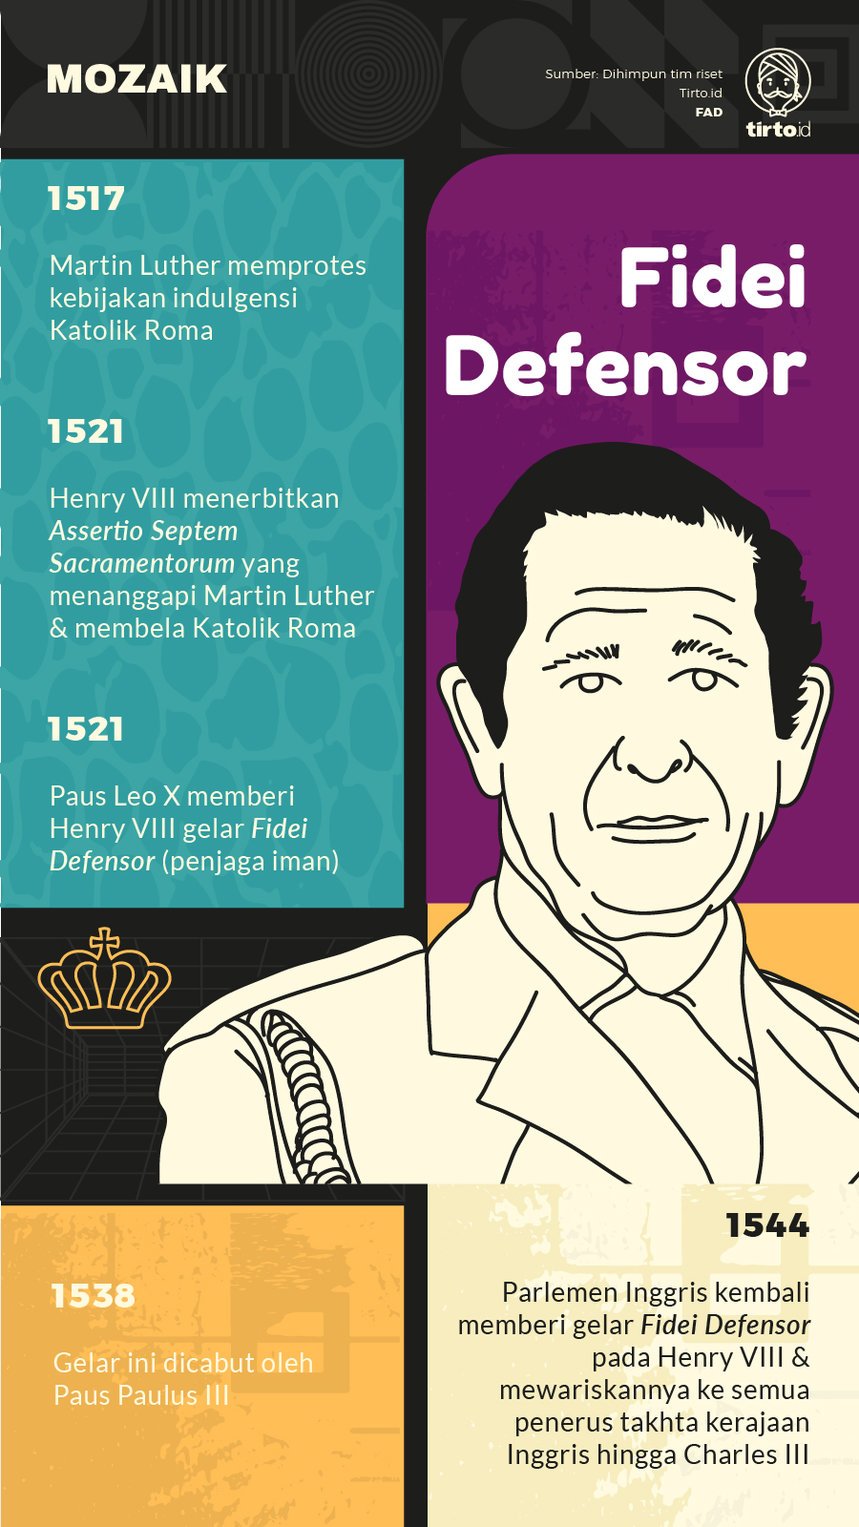 Infografik Mozaik Fidel Defensor